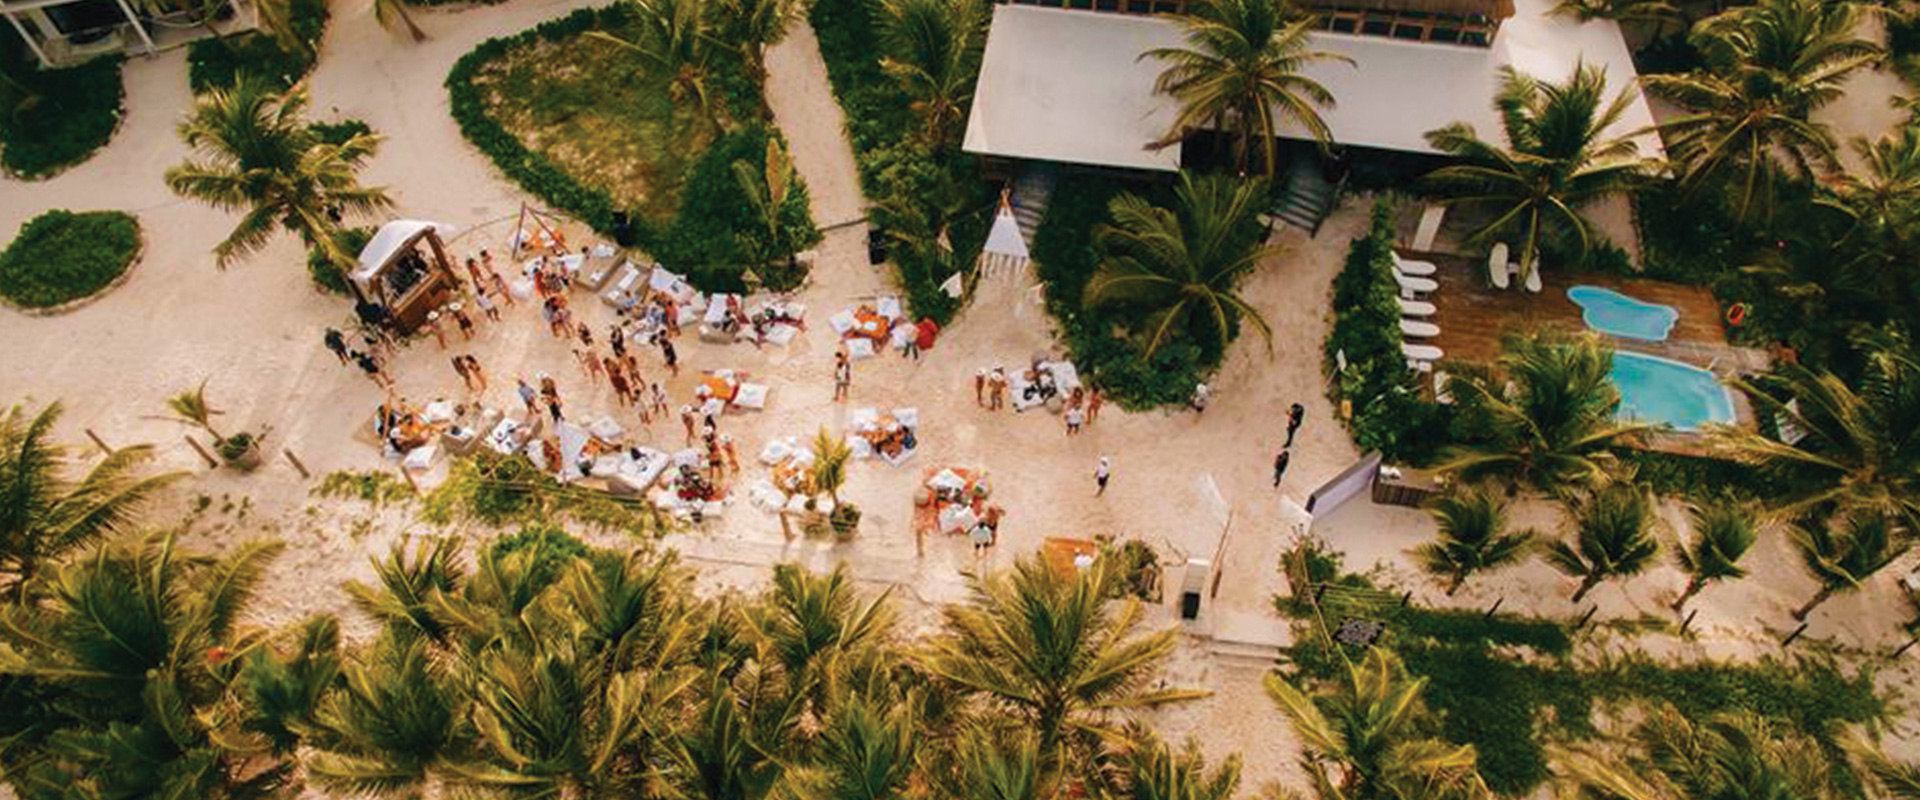 Hotel-Tulum-Cabin-LosLirios-Beach-Restaurant.jpg